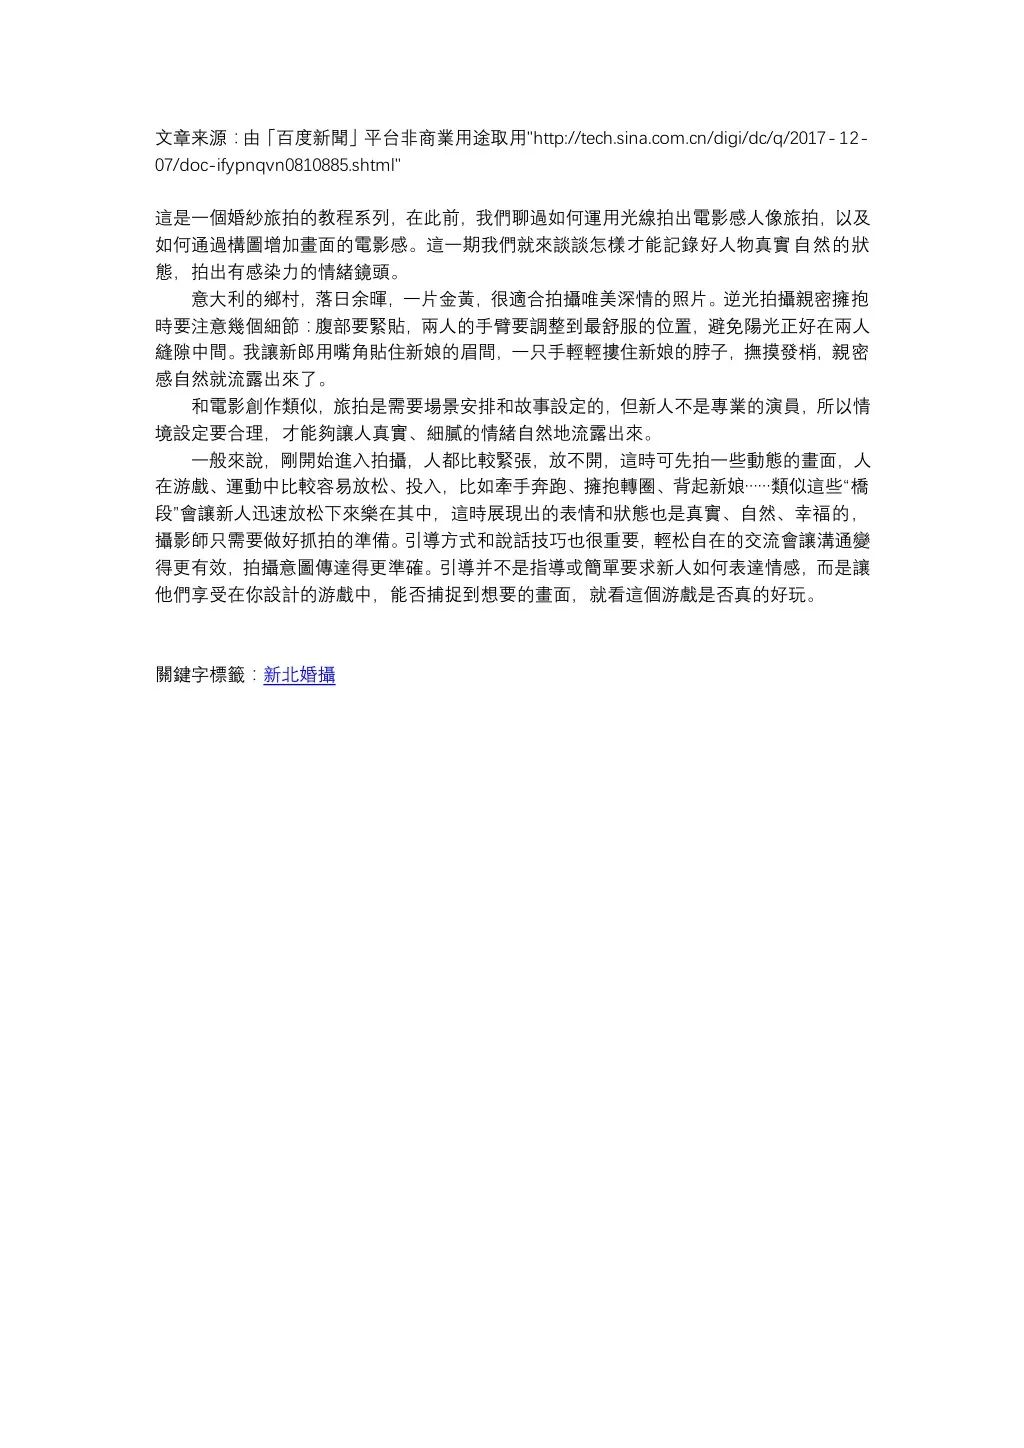 http tech sina com cn digi dc q 2017